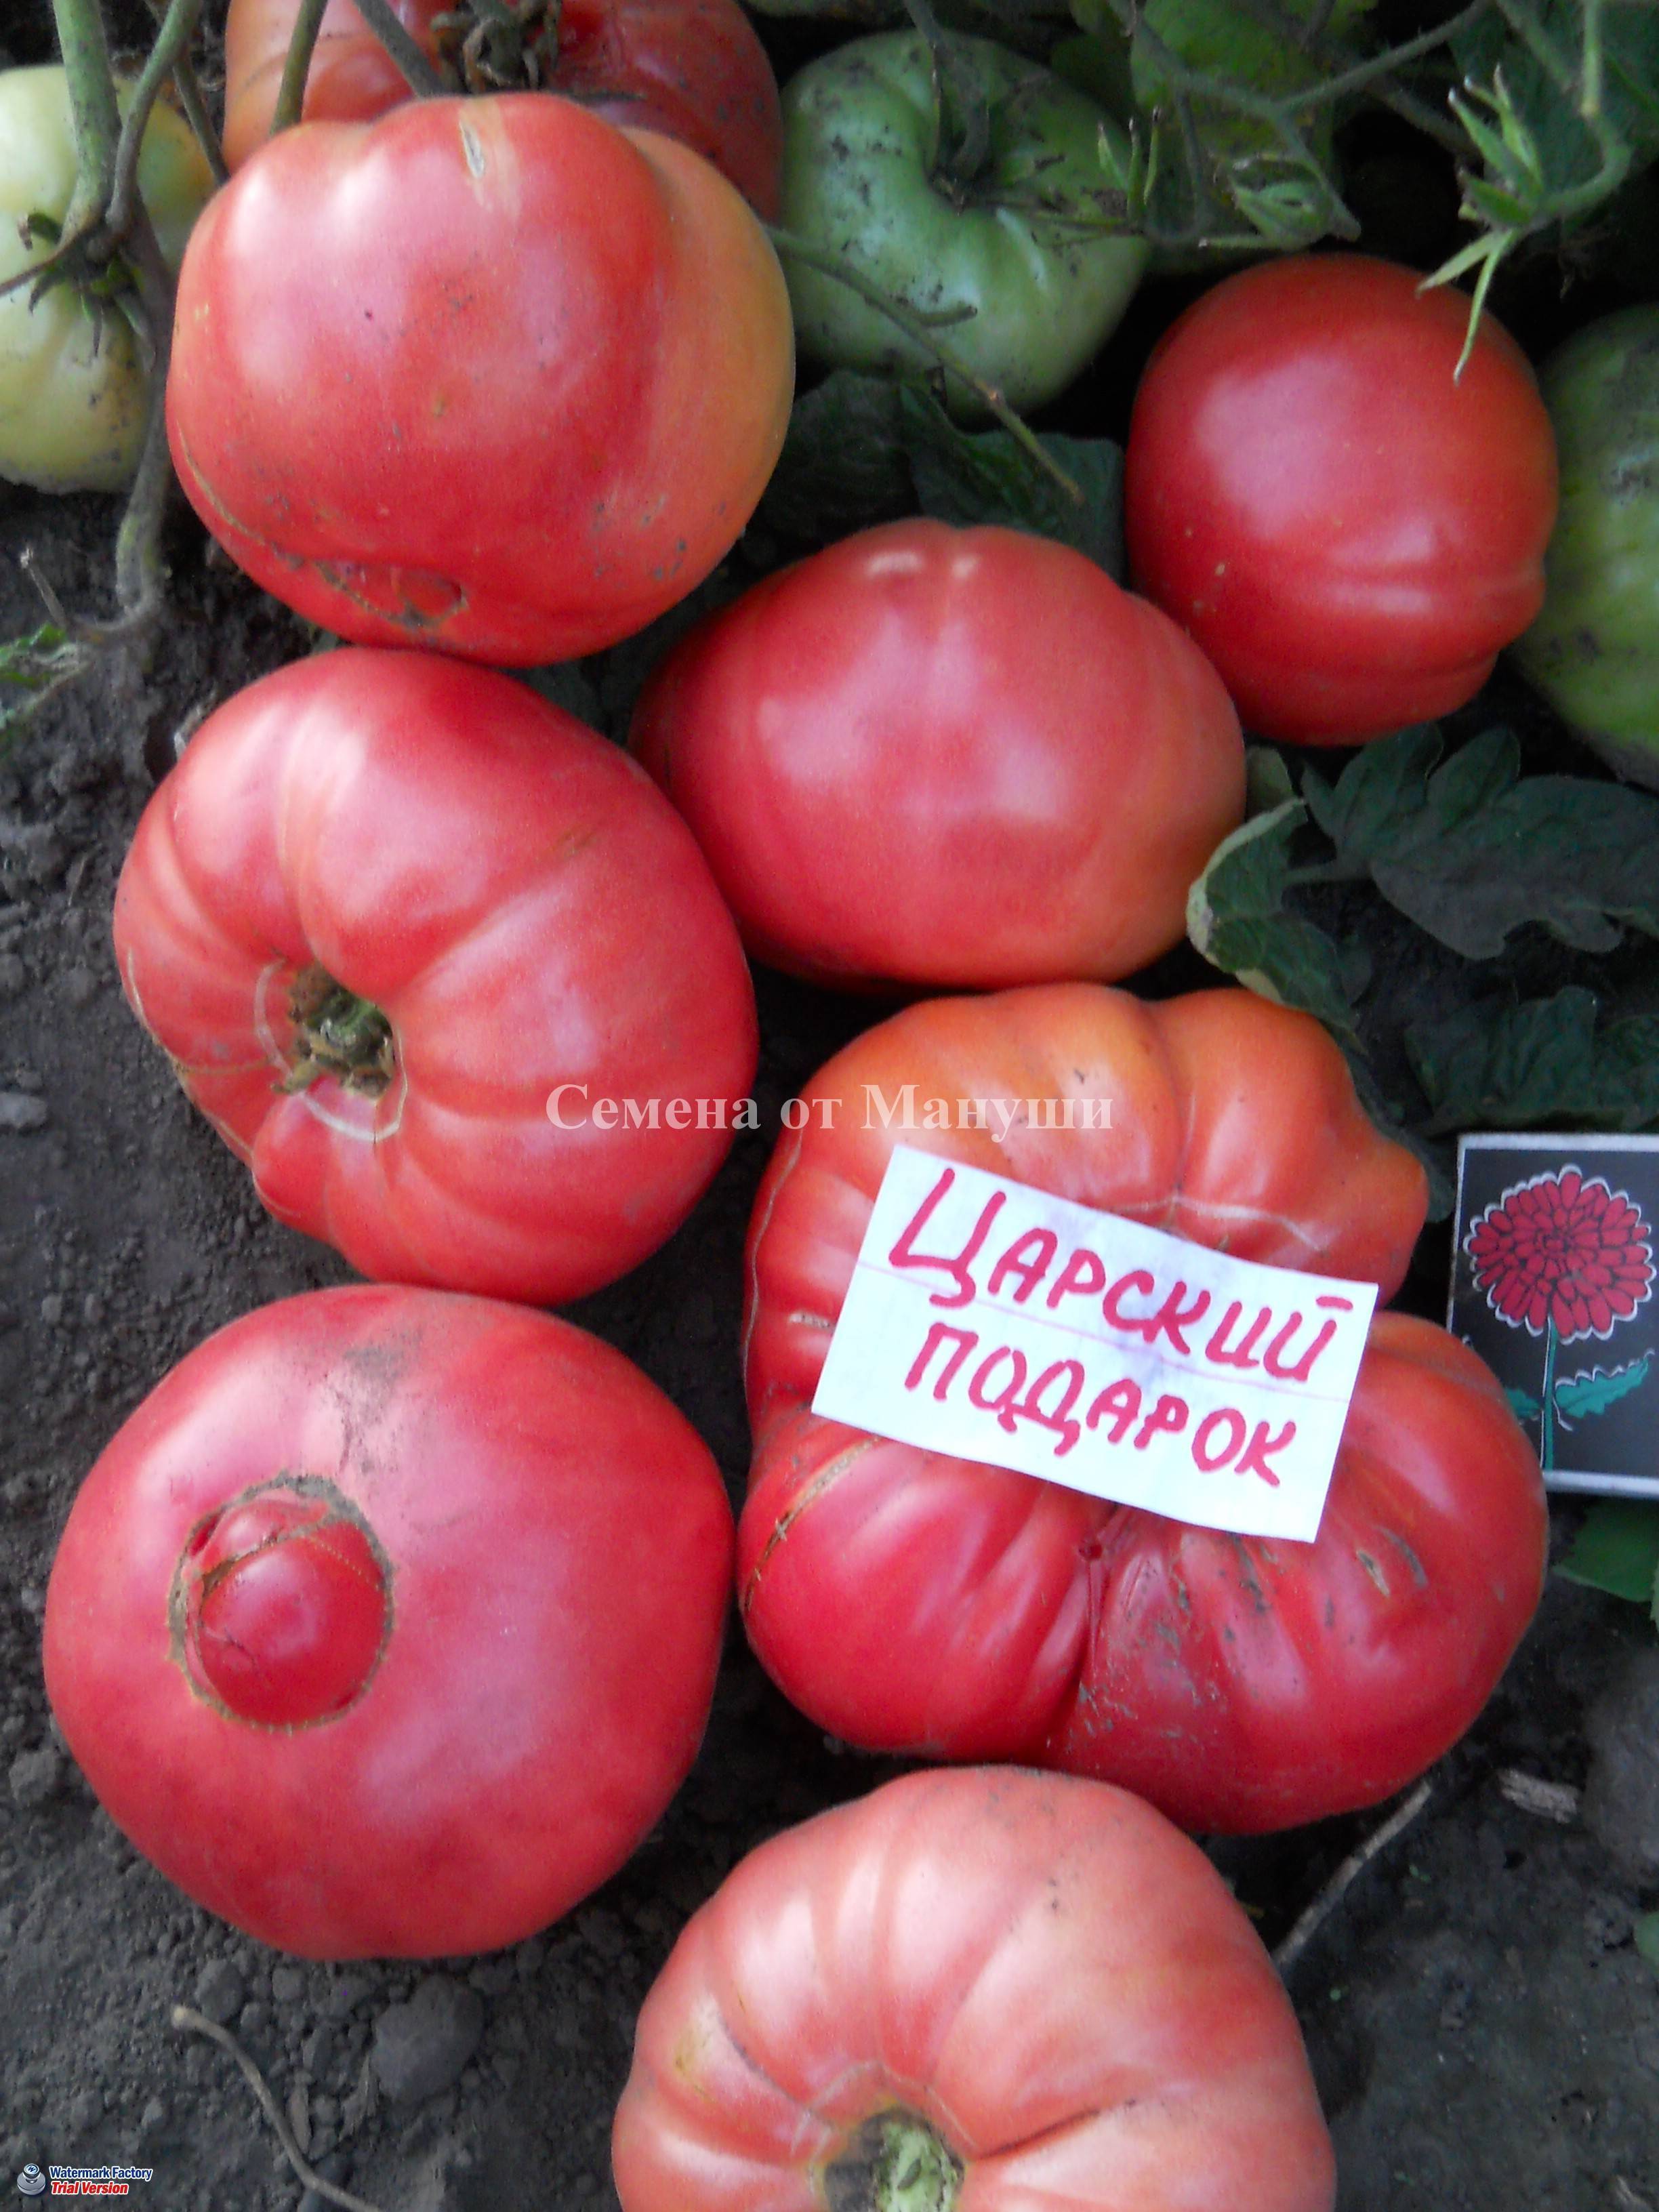 Томат царский любимец: отзывы об урожайности помидоров, фото семян, описание и характеристика сорта